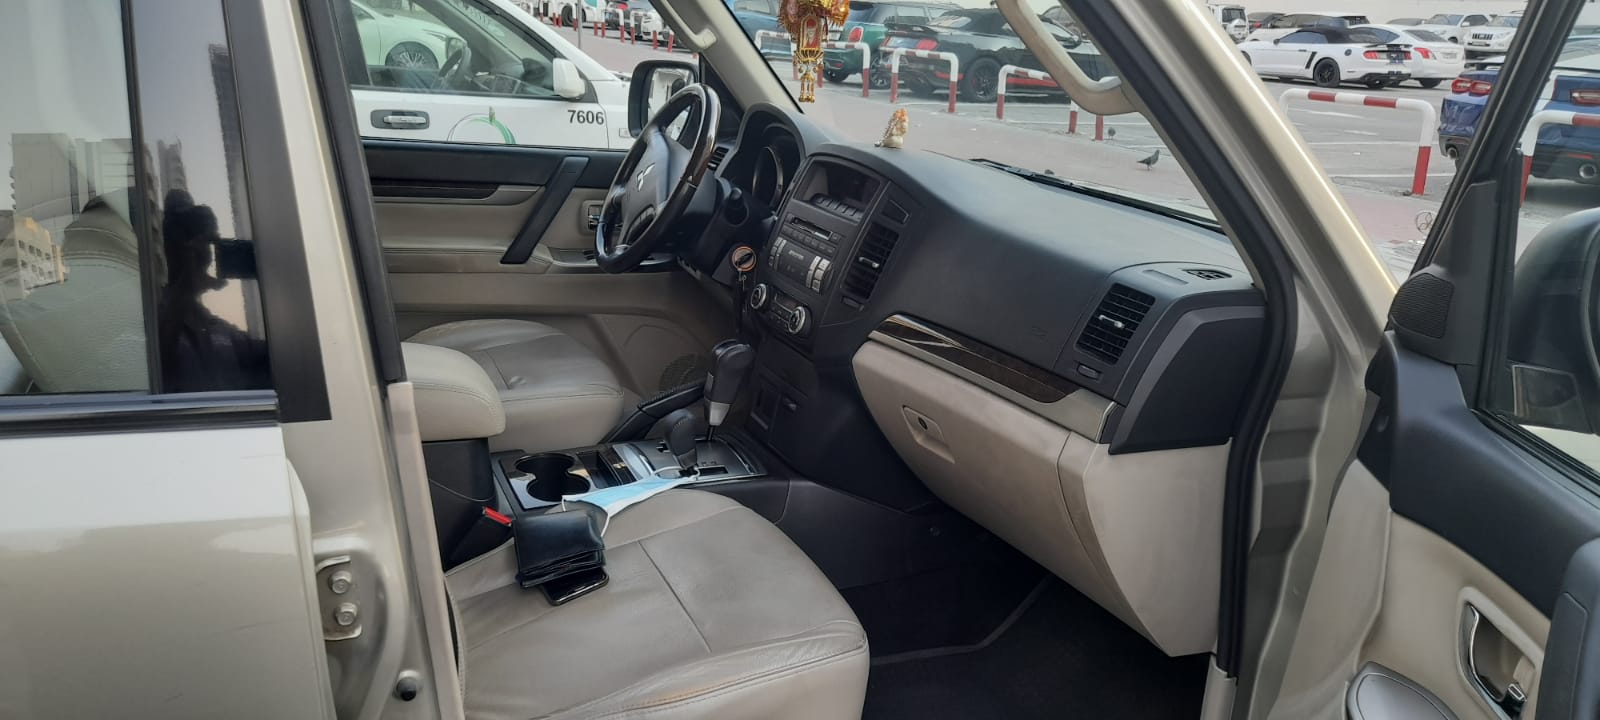 2013 Mitsubishi Pajero Gls for Sale in Dubai